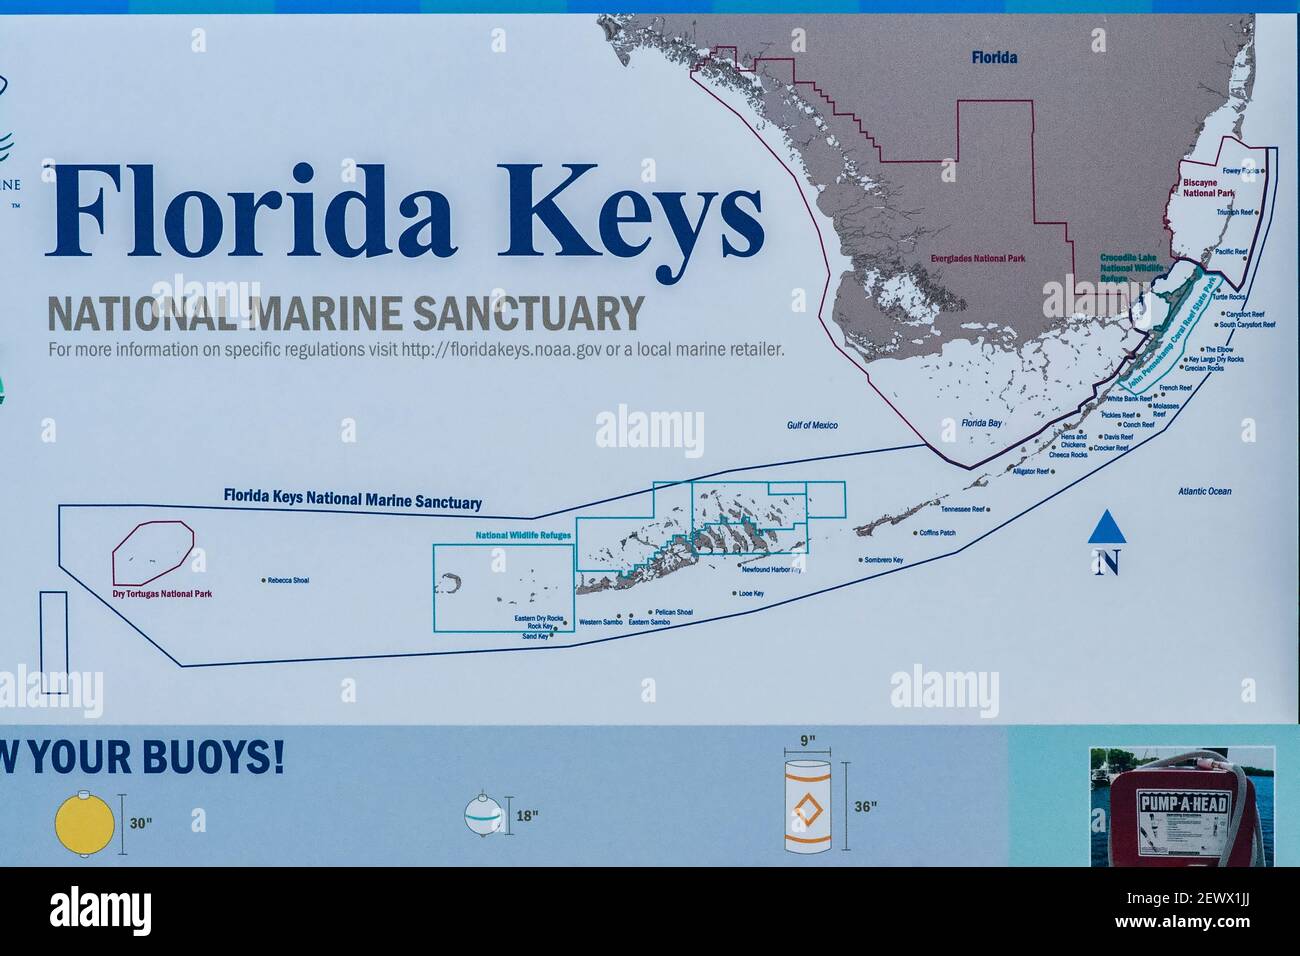 Un cartello che mostra una mappa del Florida Keys National Marine Sanctuary presso il Miami-Dade Homestead Park e Herbert Hoover Marina nella Florida meridionale. Foto Stock